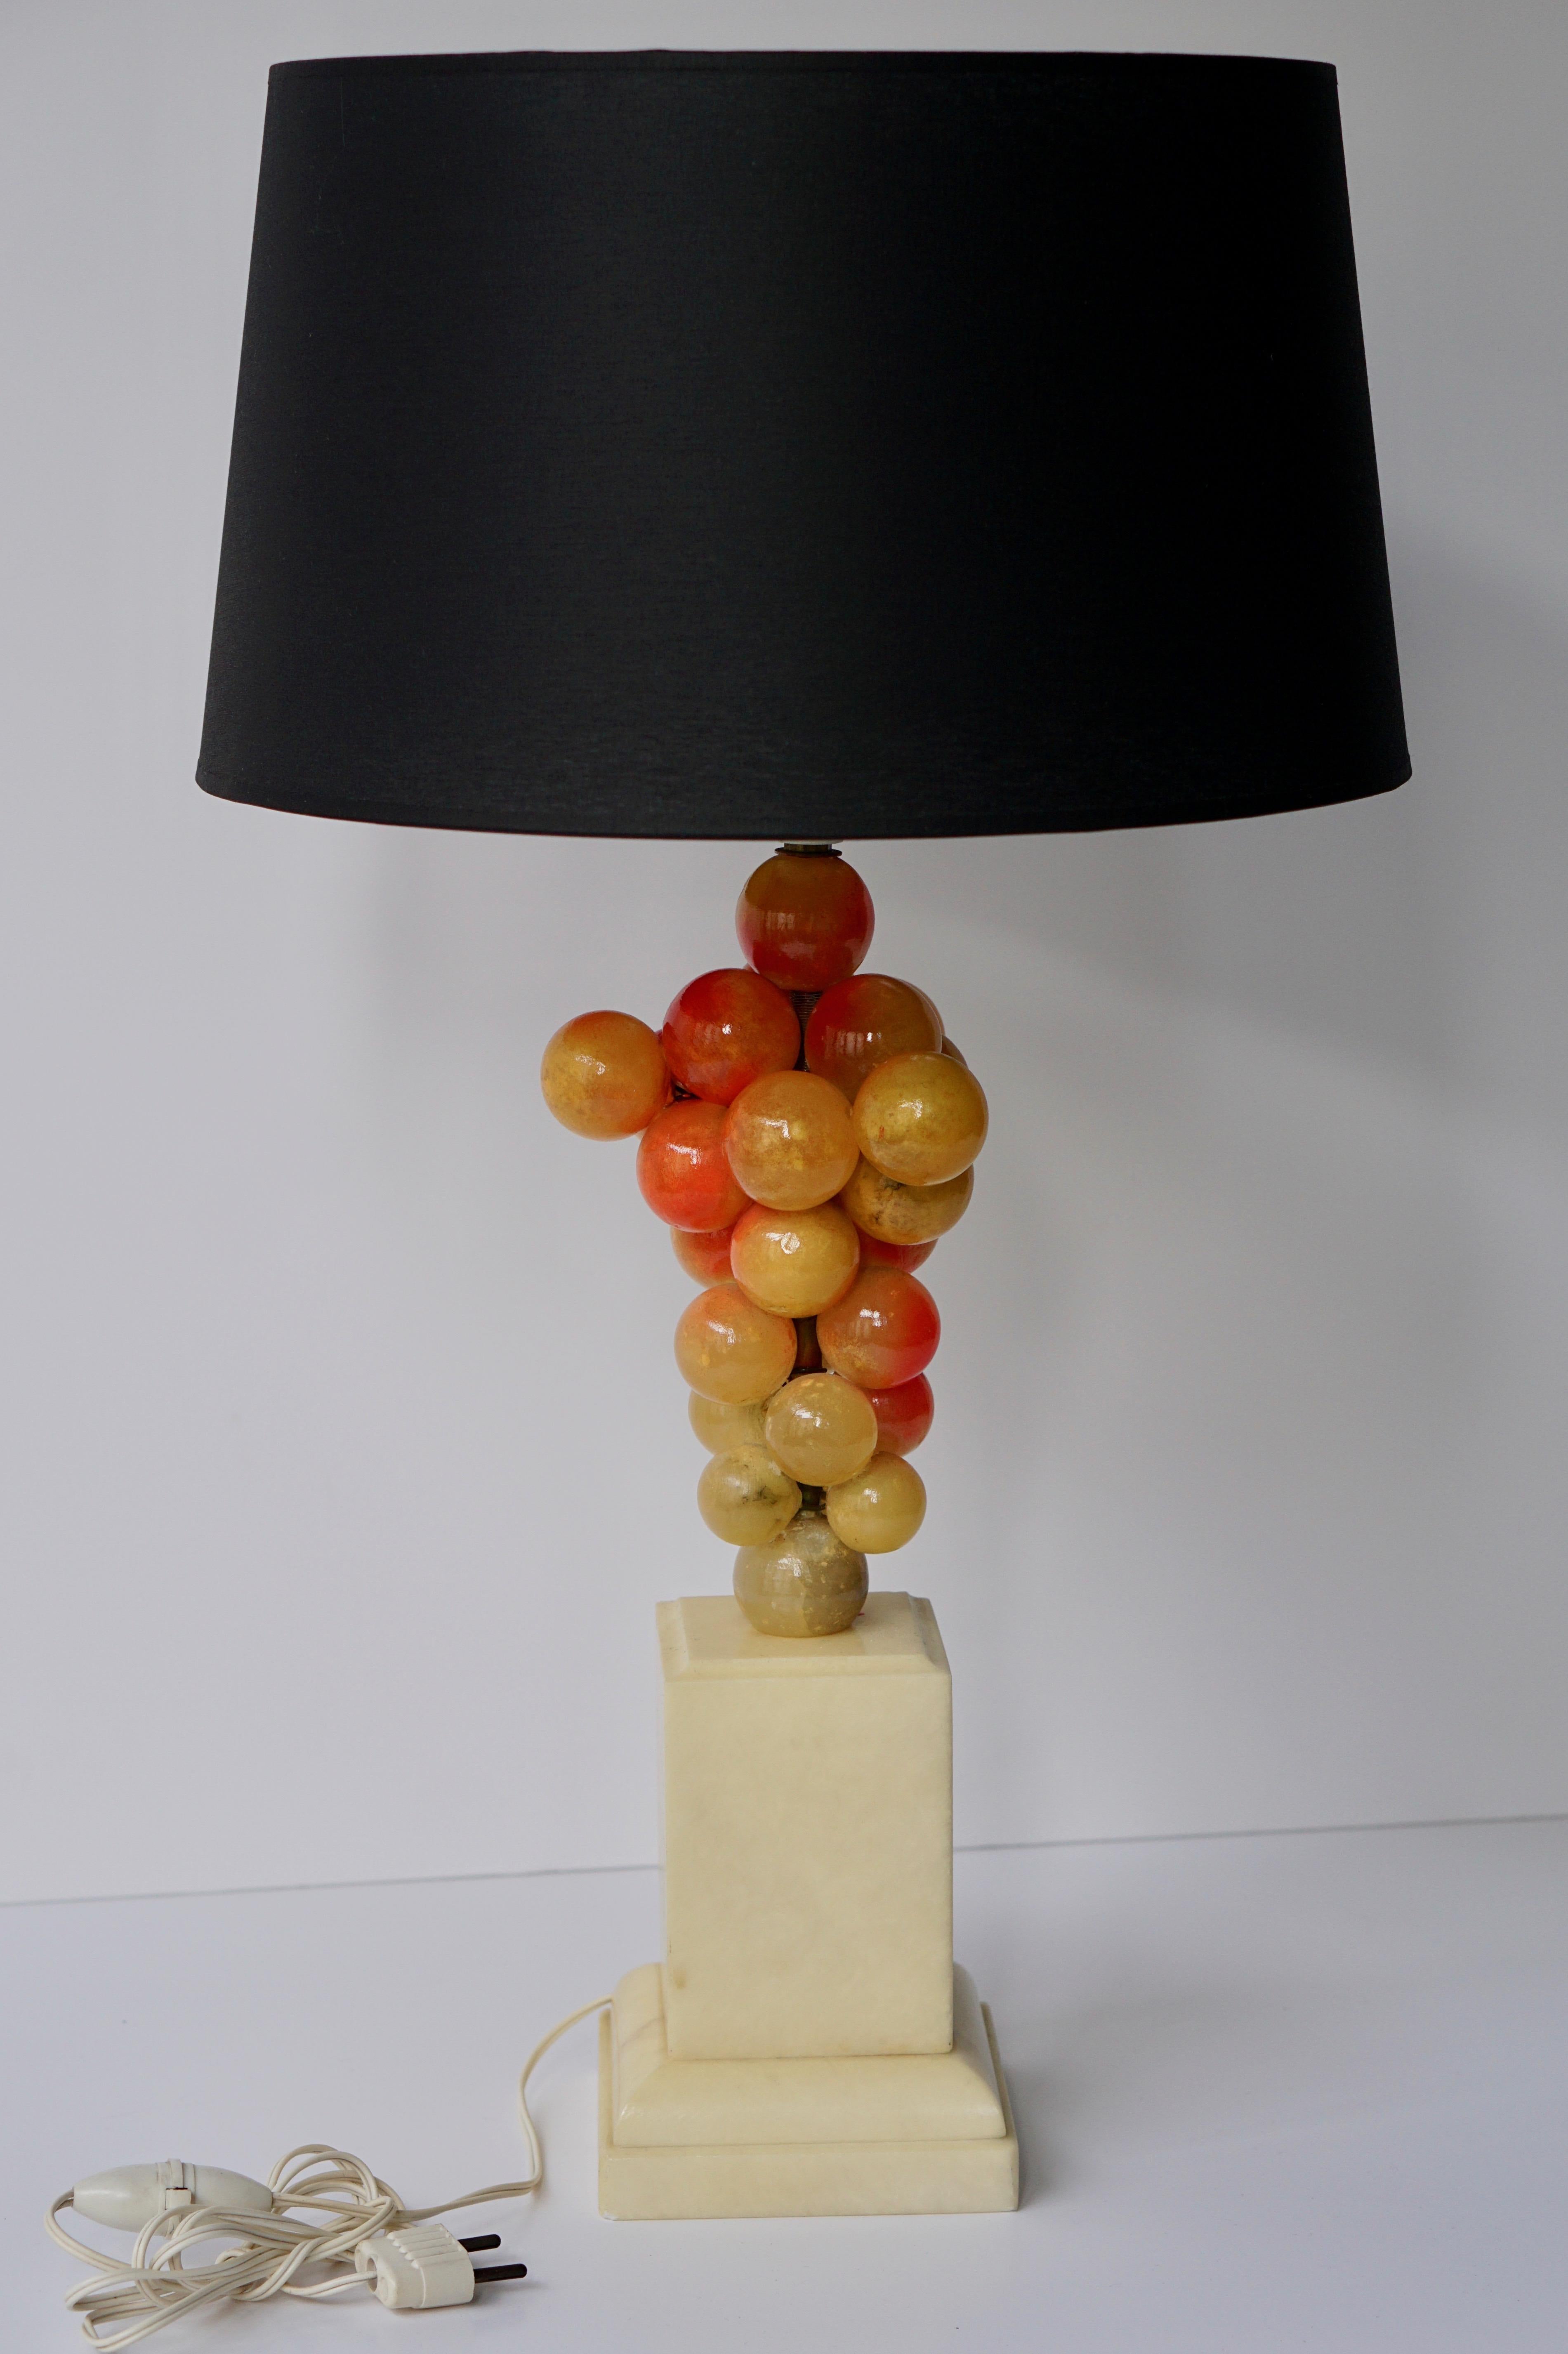 Lampe de table raisin d'albâtre.
Mesures : Hauteur base avec douille 46 cm.
Largeur 14 cm.
Profondeur 14 cm.

L'abat-jour n'est pas inclus dans le prix.